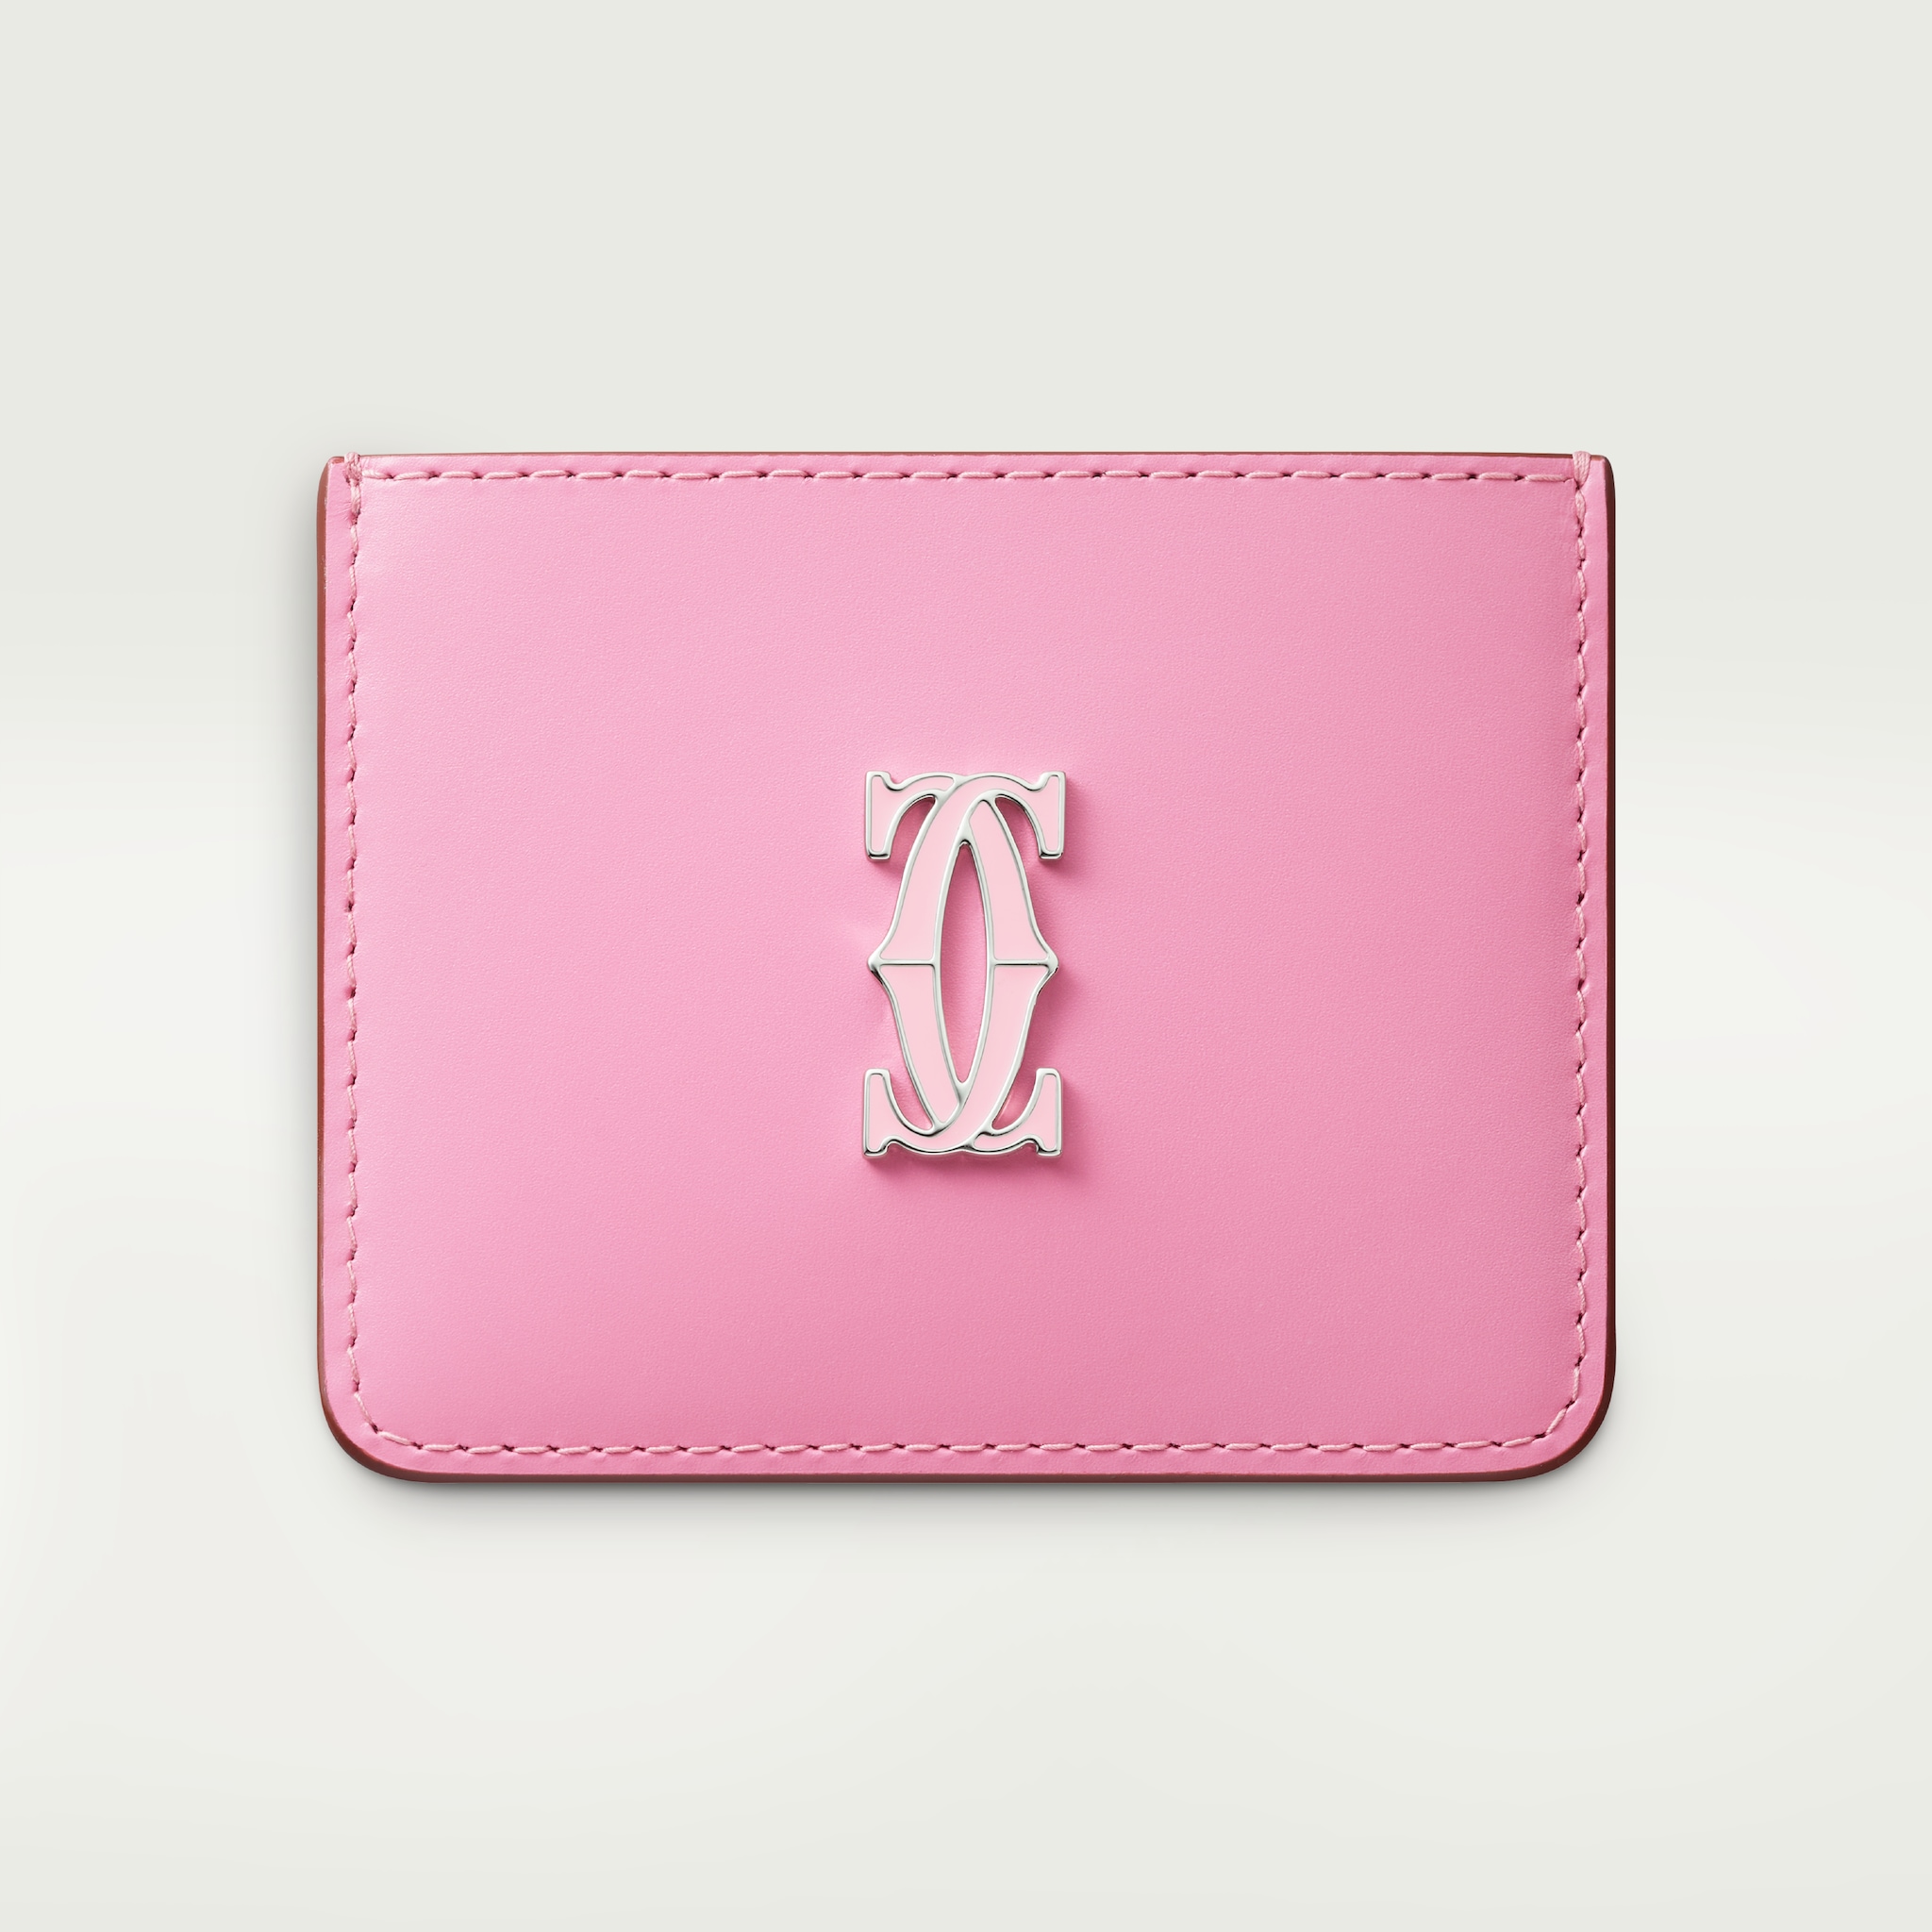 C de Cartier 卡片夾雙色粉紅色/淺粉紅色小牛皮，鍍鈀及淺粉紅色琺瑯飾面